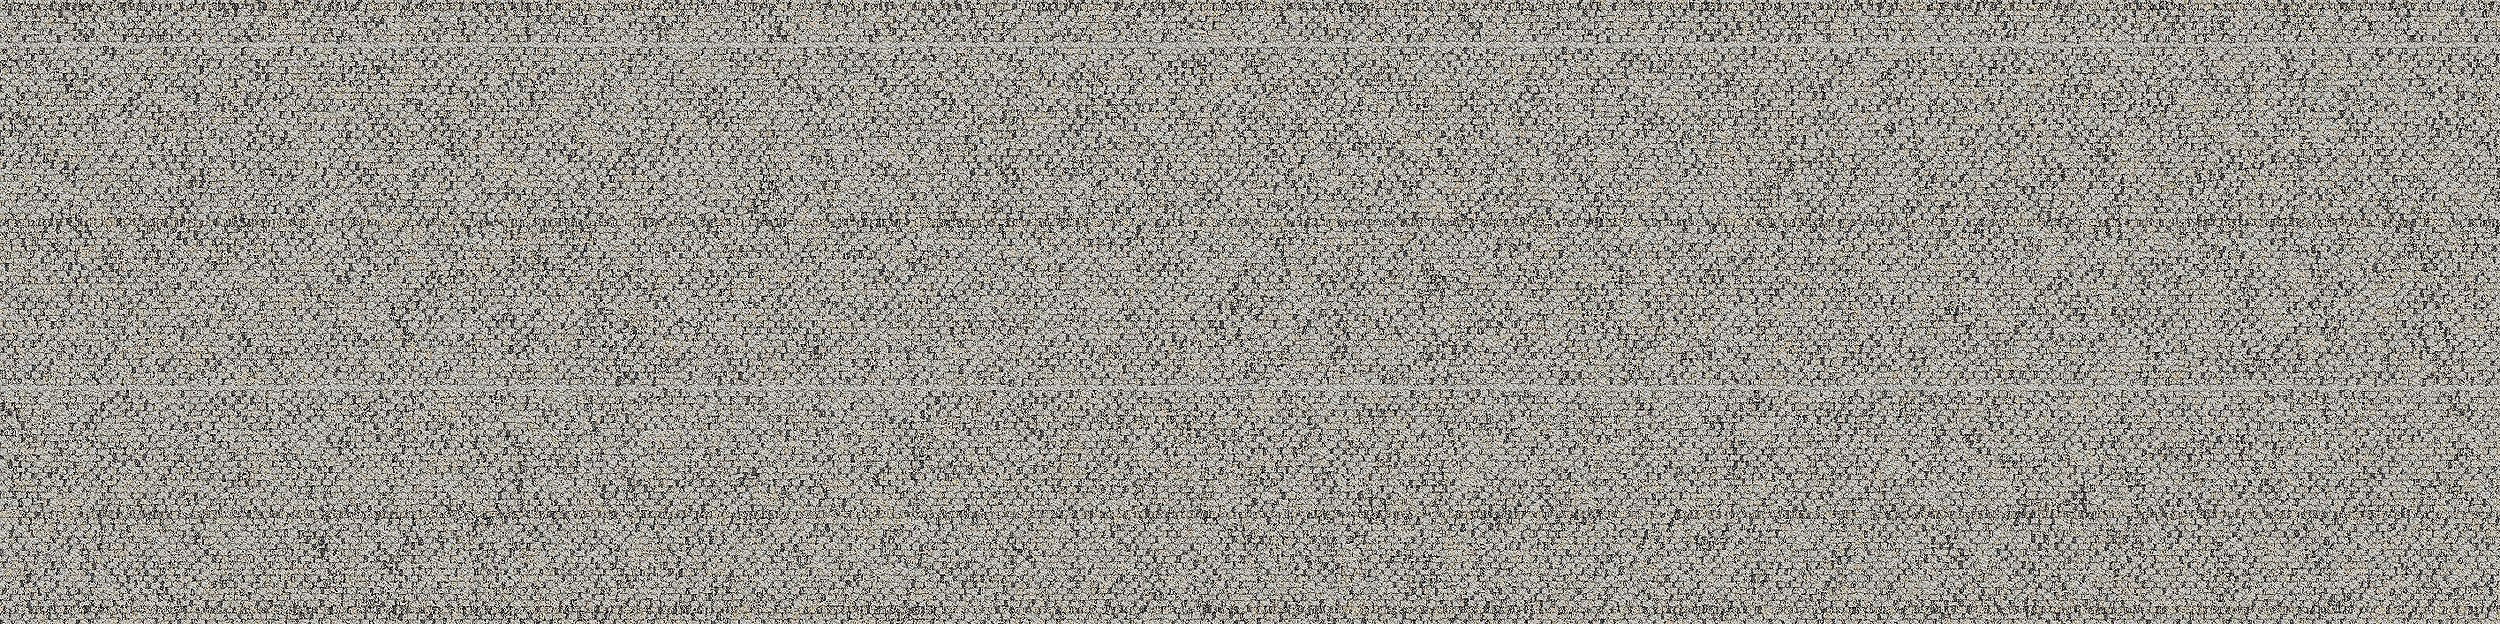 WW860 Carpet Tile In Linen Tweed número de imagen 10